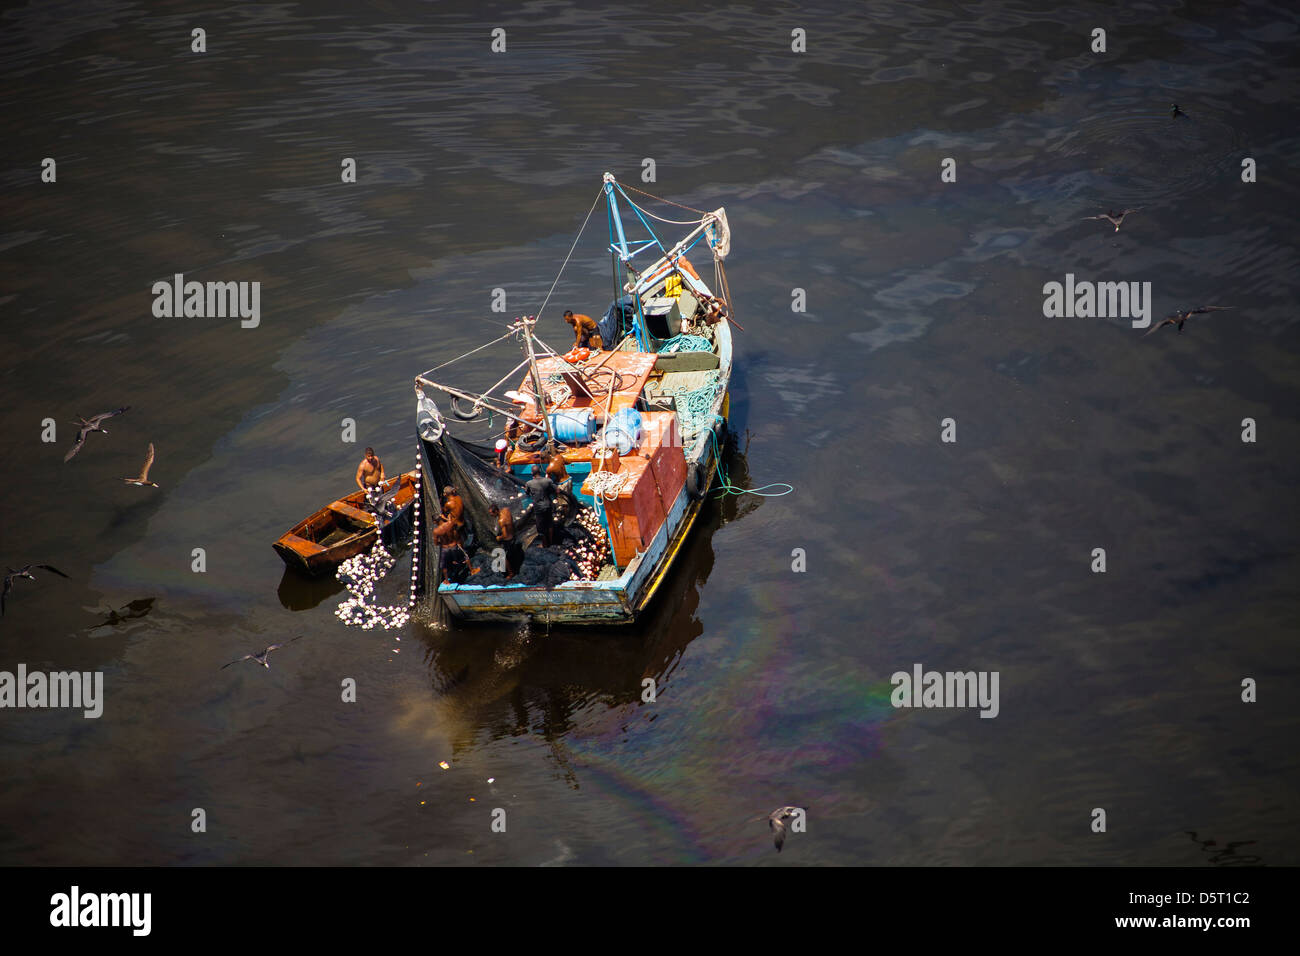 Petit bateau de pêche à l'eau polluée de la baie de Guanabara, Rio de Janeiro, Brésil. Marée noire près de l'île de Paqueta. Banque D'Images